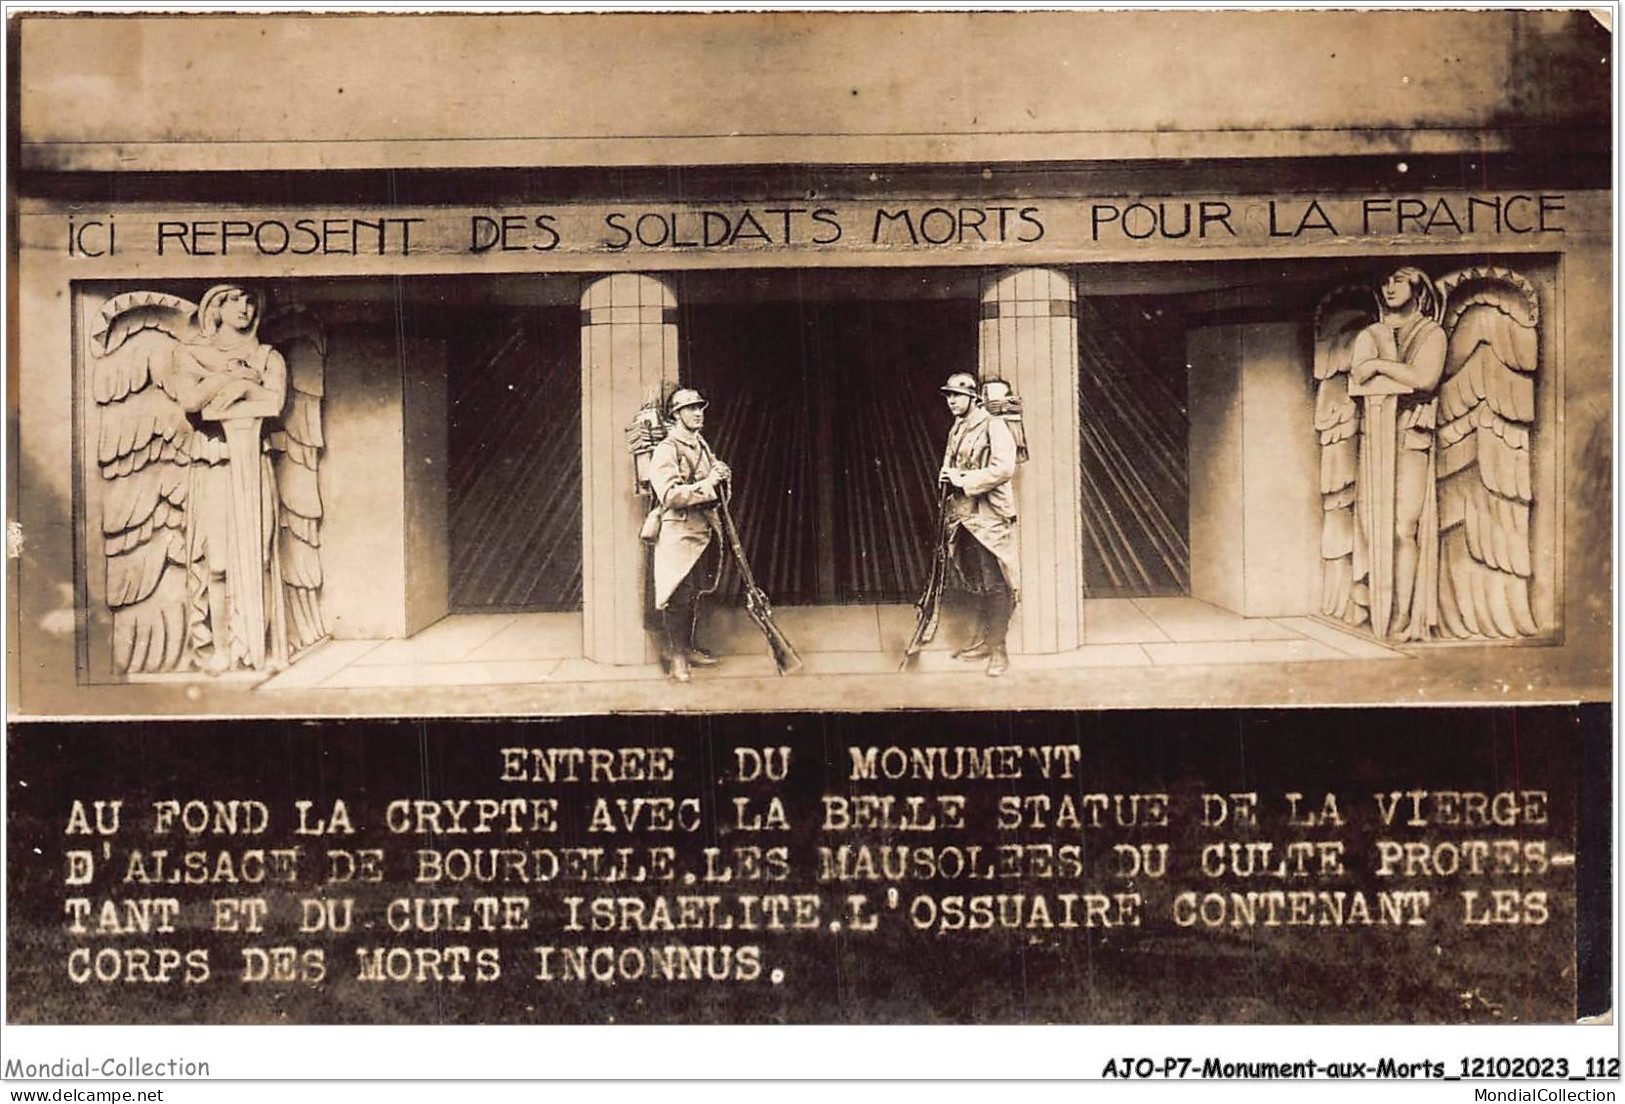 AJOP7-0704 - MONUMENT-AUX-MORTS - Ici Reposent Des Soldats Morts Pour La France -CULTE ISRAELITE JUDAICA JUIF RELIGION - Kriegerdenkmal